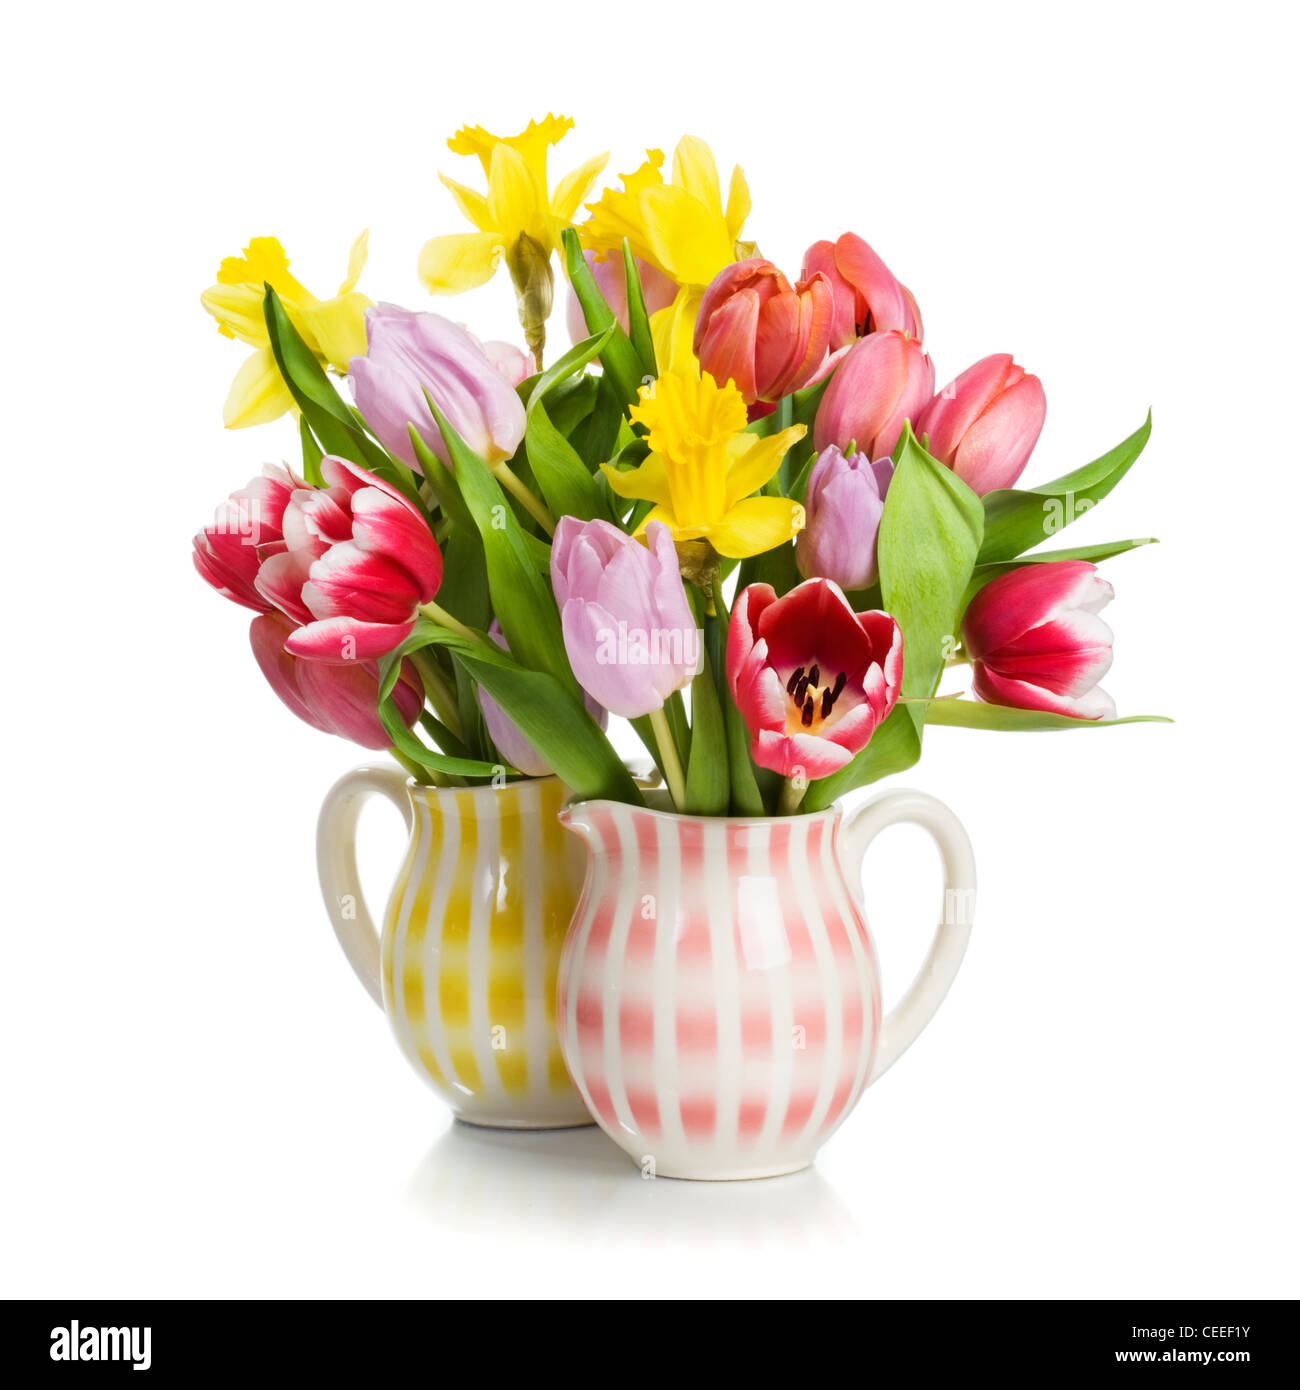 Deux pichets avec des tulipes et des jonquilles sur fond blanc Banque D'Images